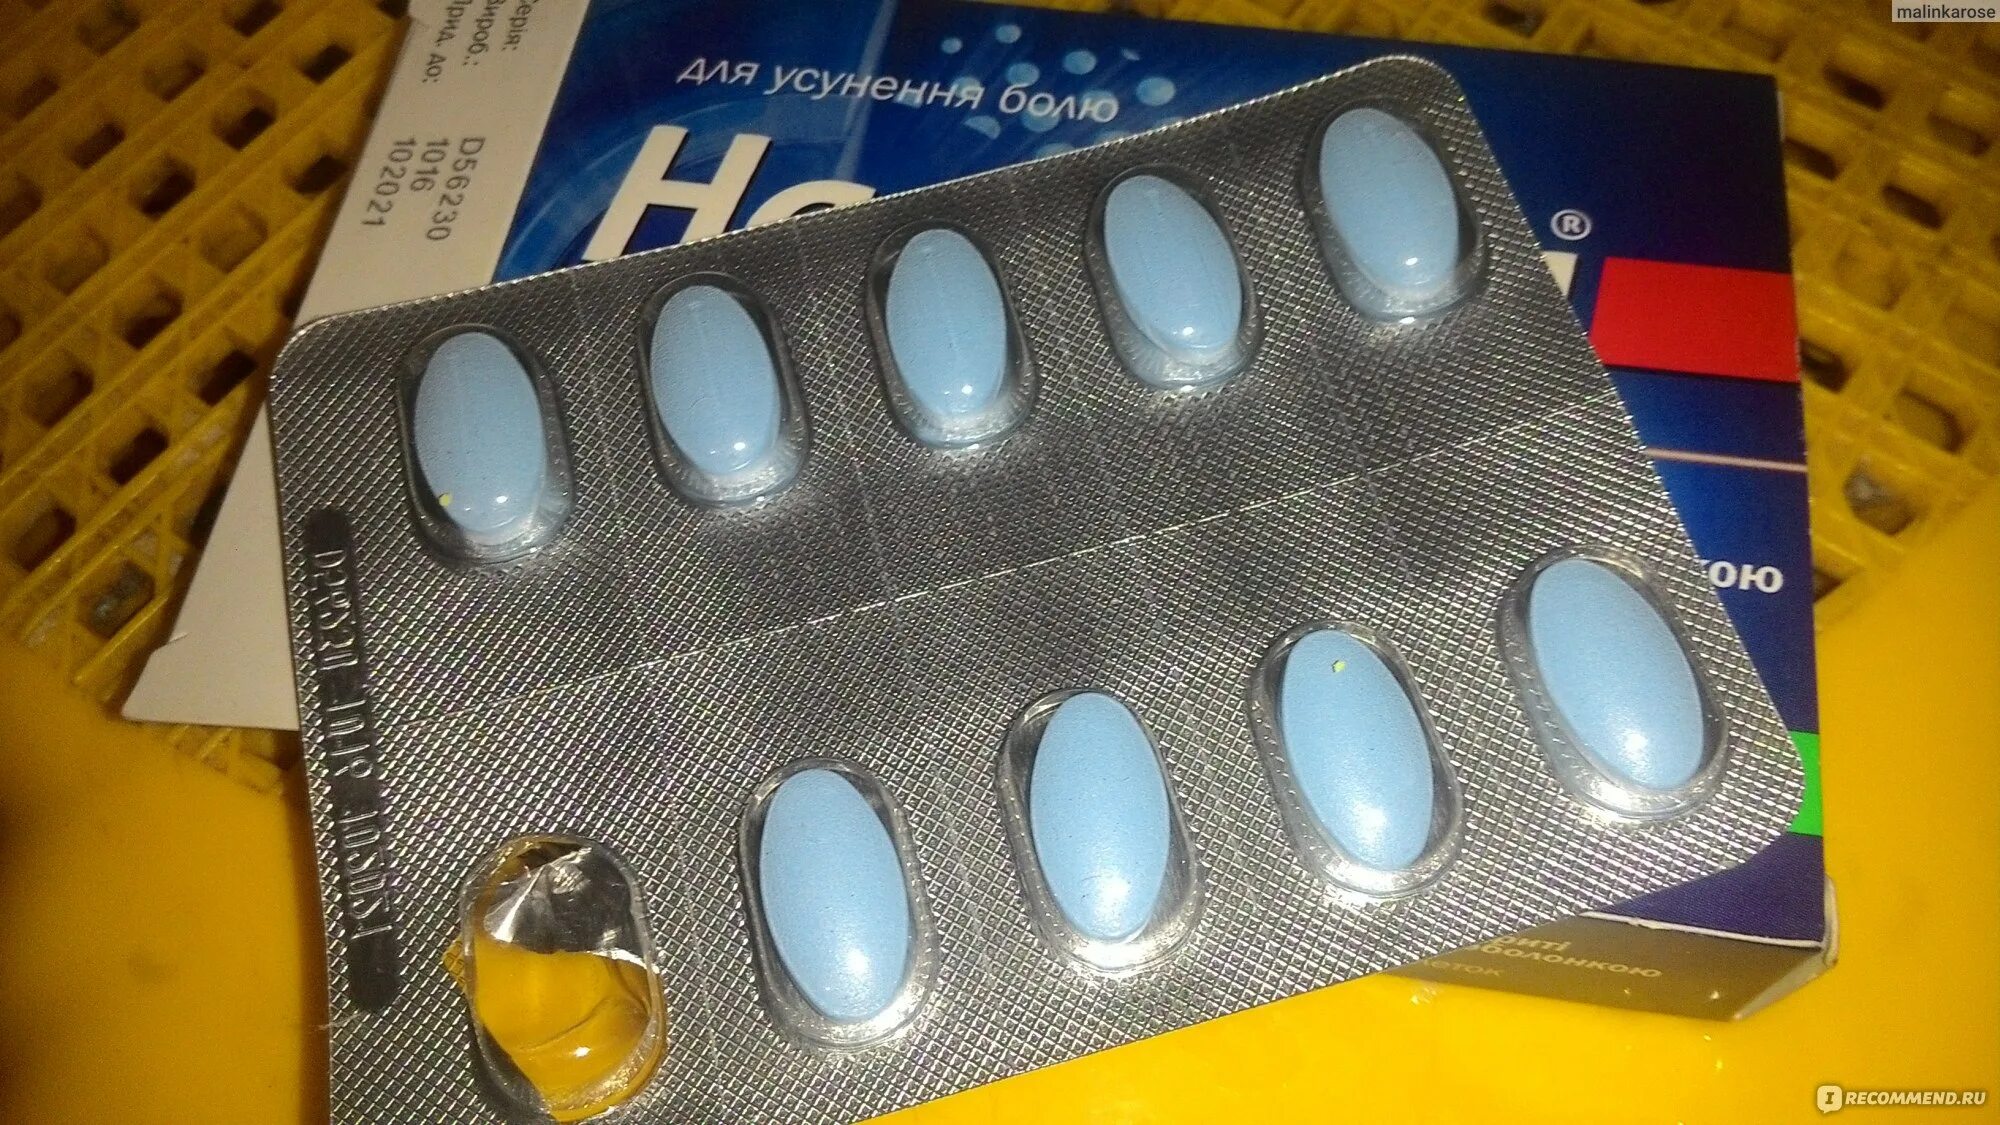 Как называется обезболивающее. Голубые таблетки обезболивающие. Синие таблетки обезболивающие. Синие обезоболевающие табл. Таблетка обезболивающая голубая.